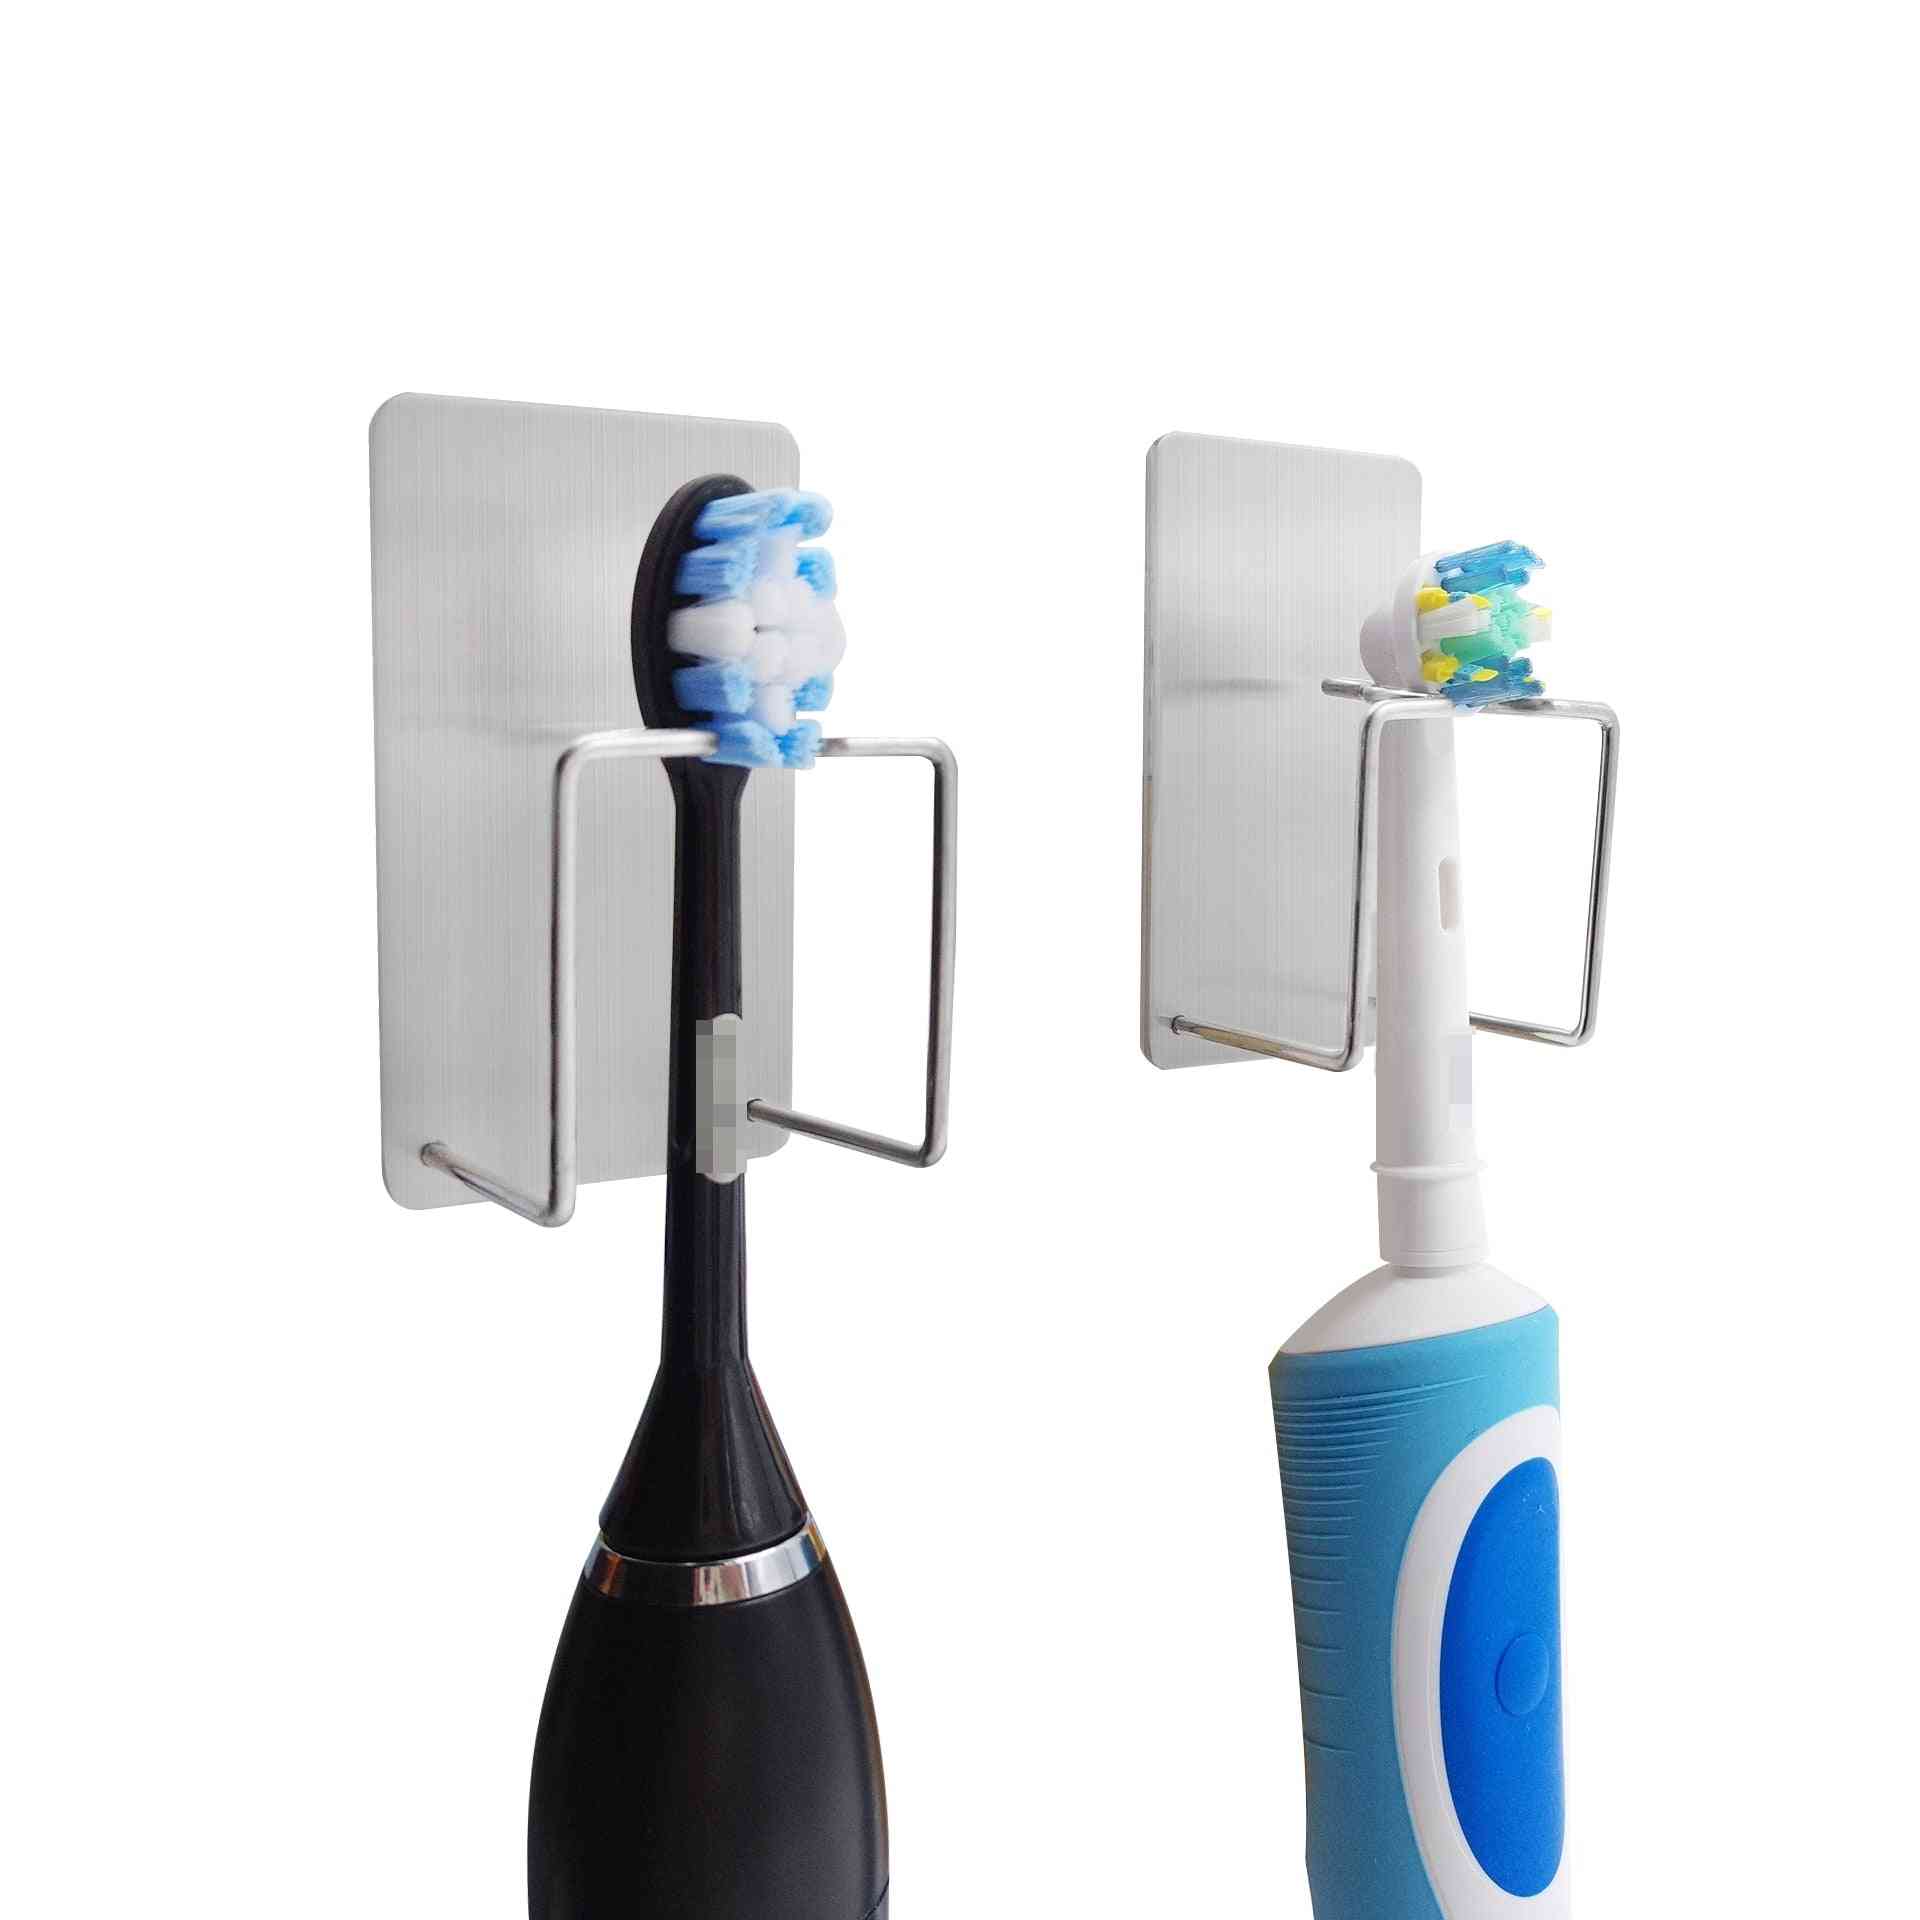 Adesivos de gancho de suporte de parede de armazenamento de aço inoxidável 304 para uso em pasta de dente, escova de dente e acessórios de banheiro.